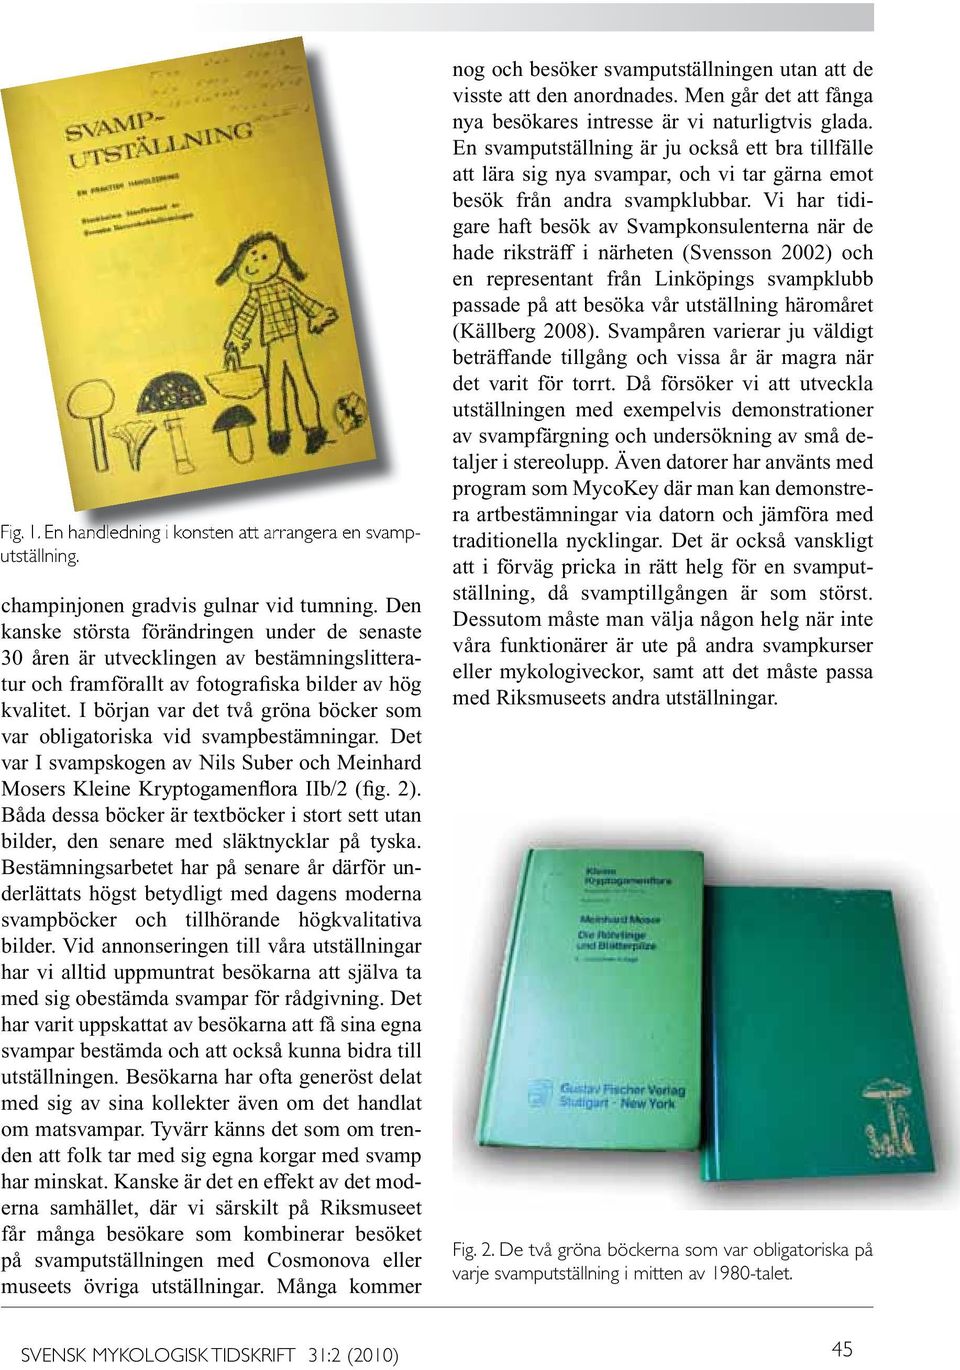 I början var det två gröna böcker som var obligatoriska vid svampbestämningar. Det var I svampskogen av Nils Suber och Meinhard Mosers Kleine Kryptogamenflora IIb/2 (fig. 2).